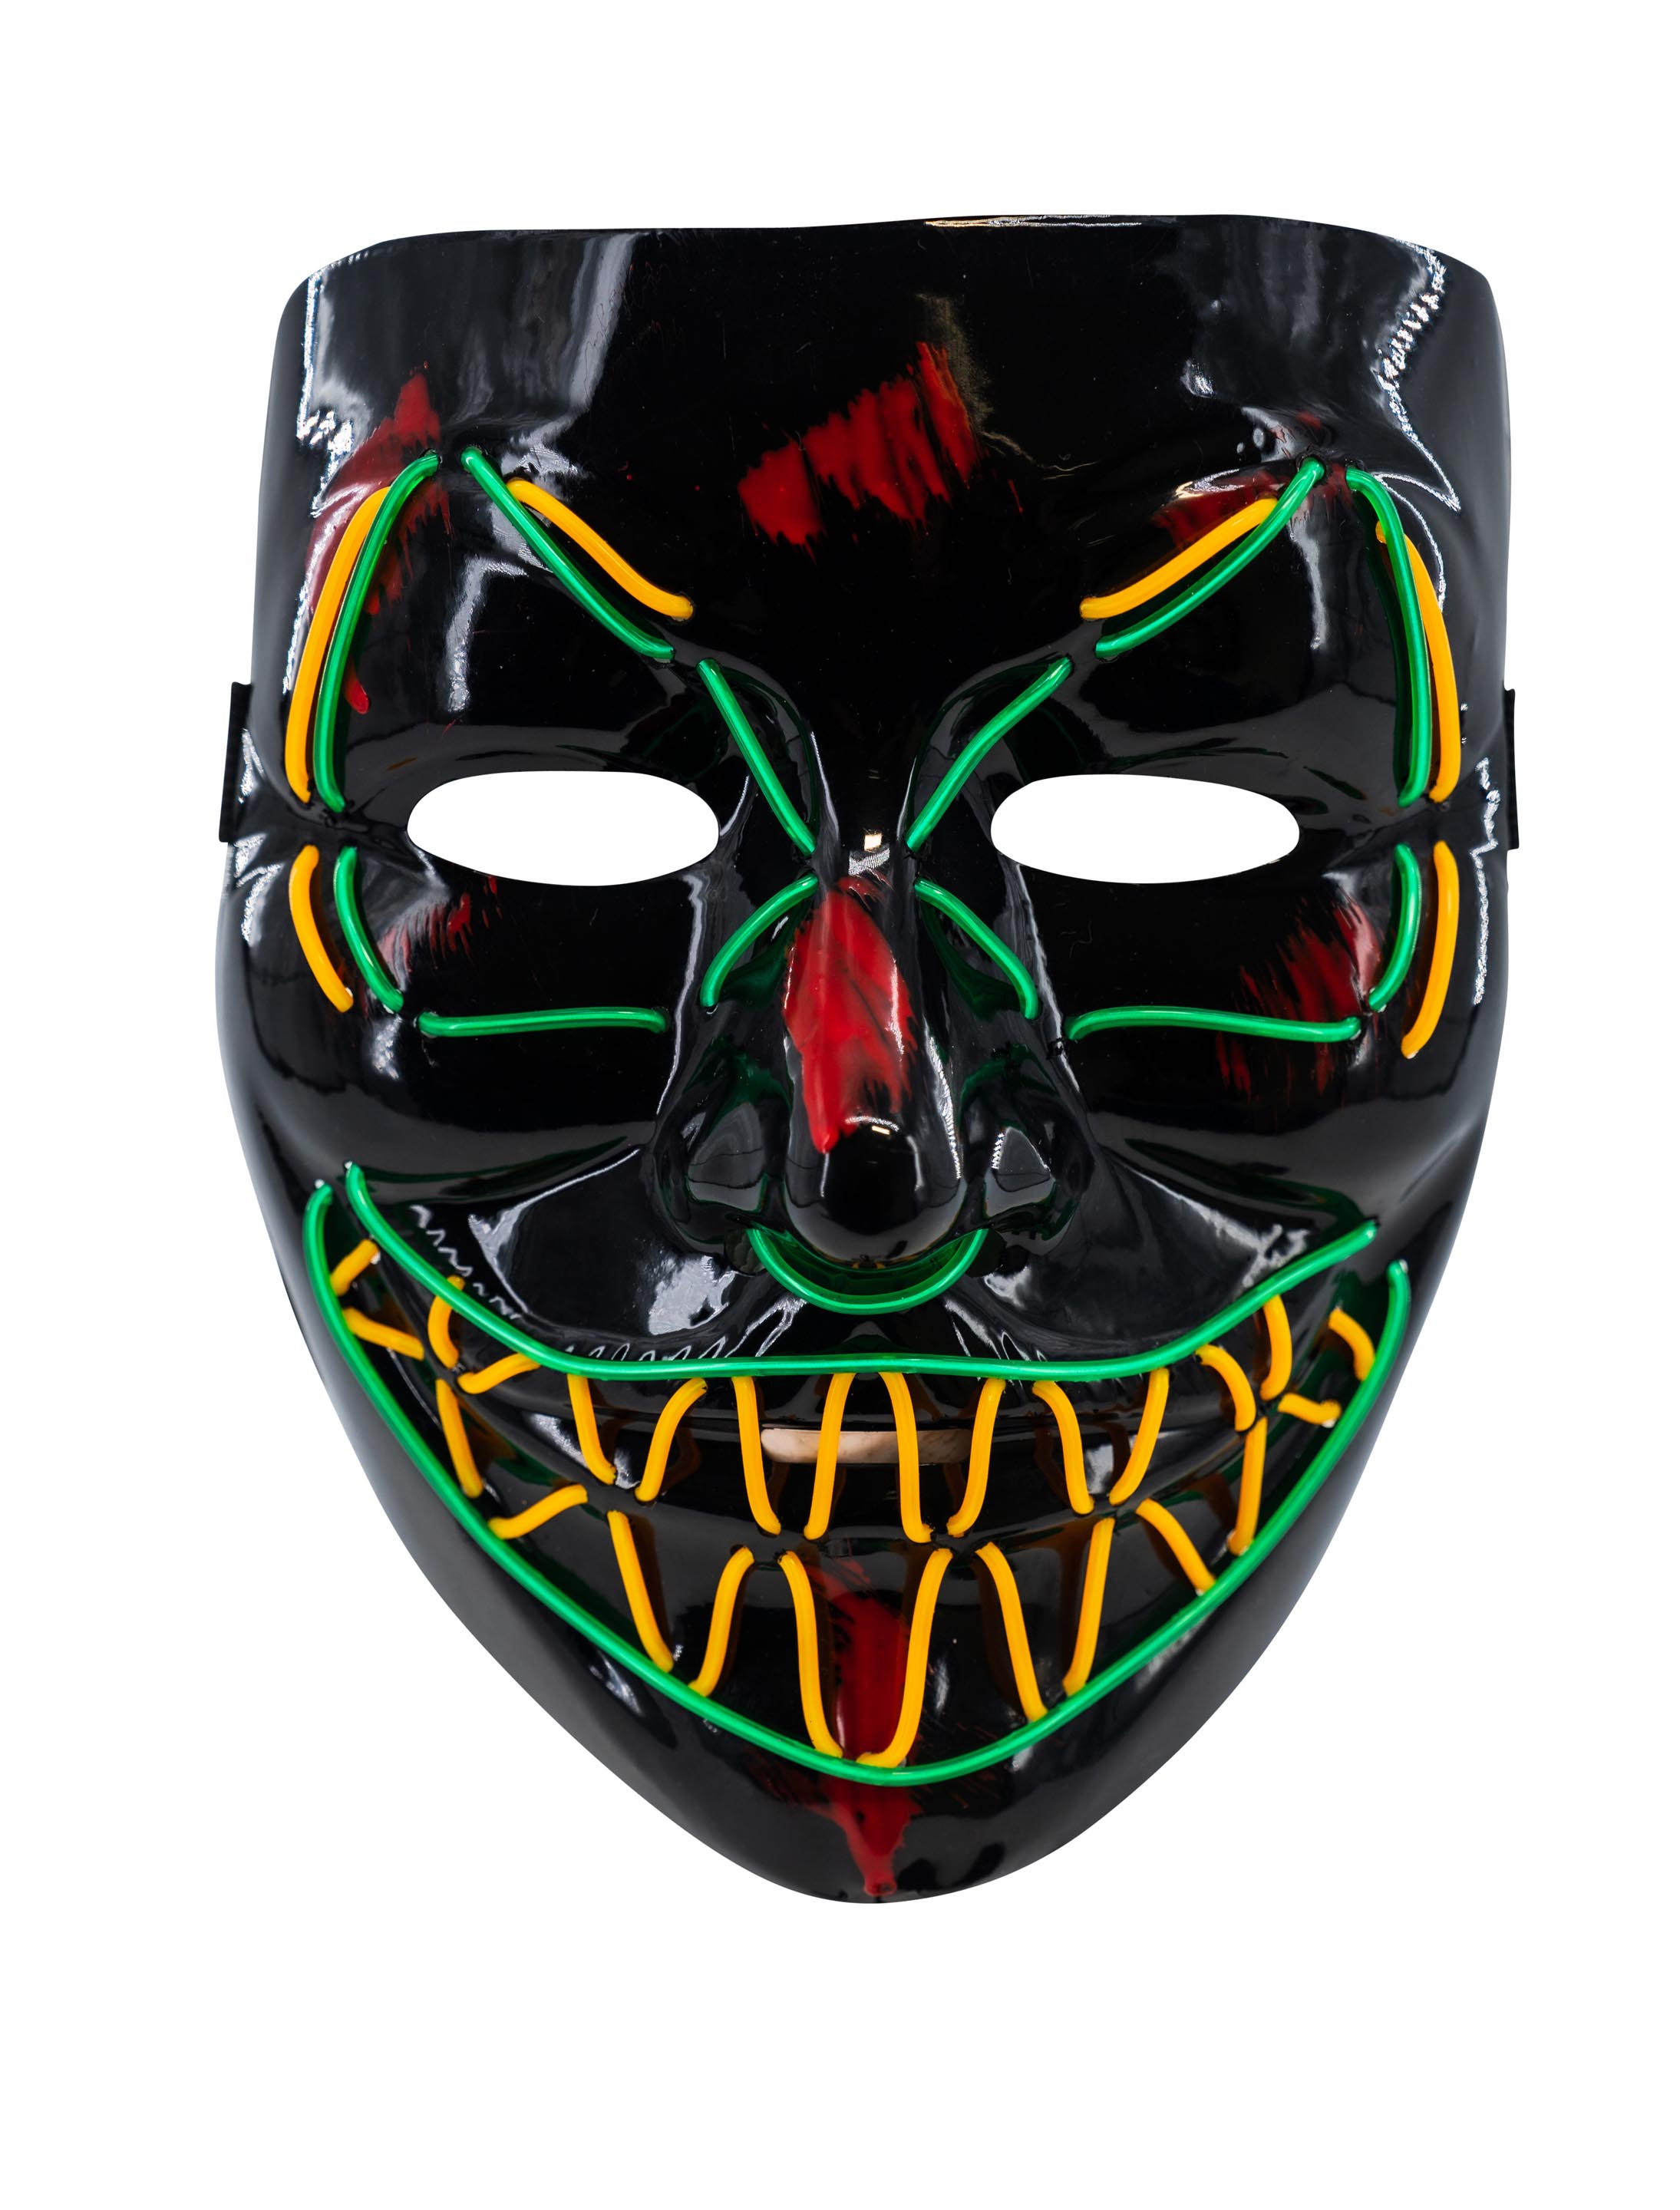 LED Maske Anonym bunt